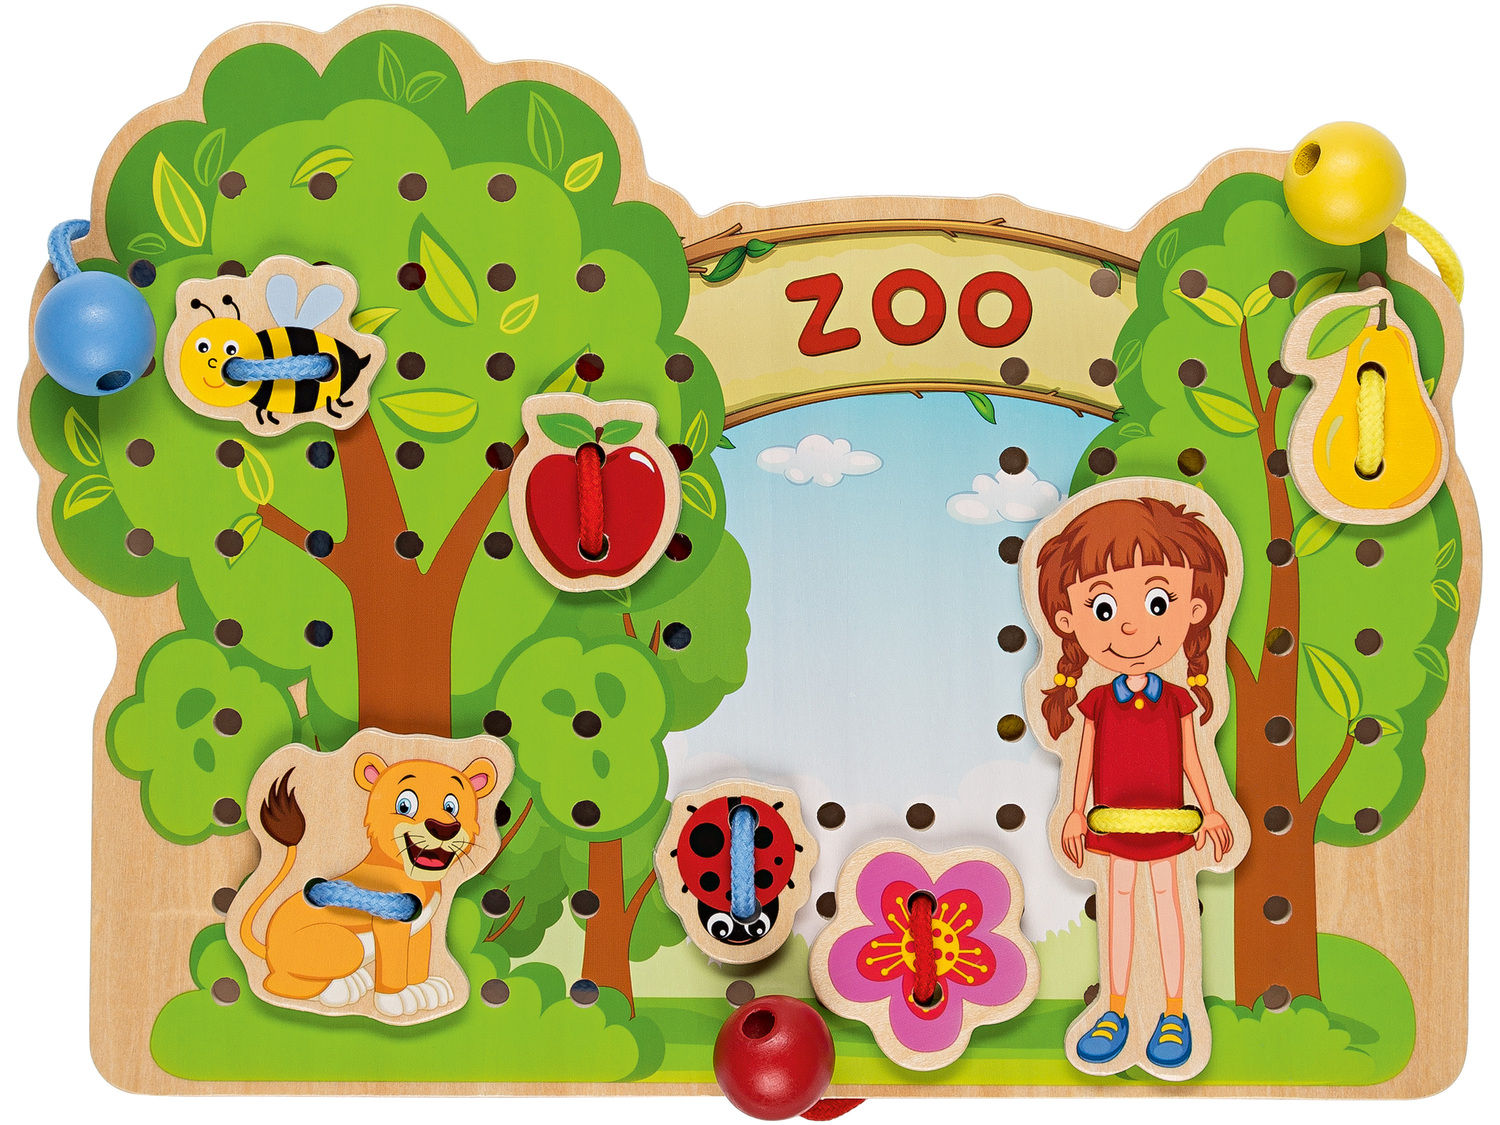 Drewniana zabawka edukacyjna Playtive Junior, cena 17,99 PLN 
- do wyboru: labirynt, ...